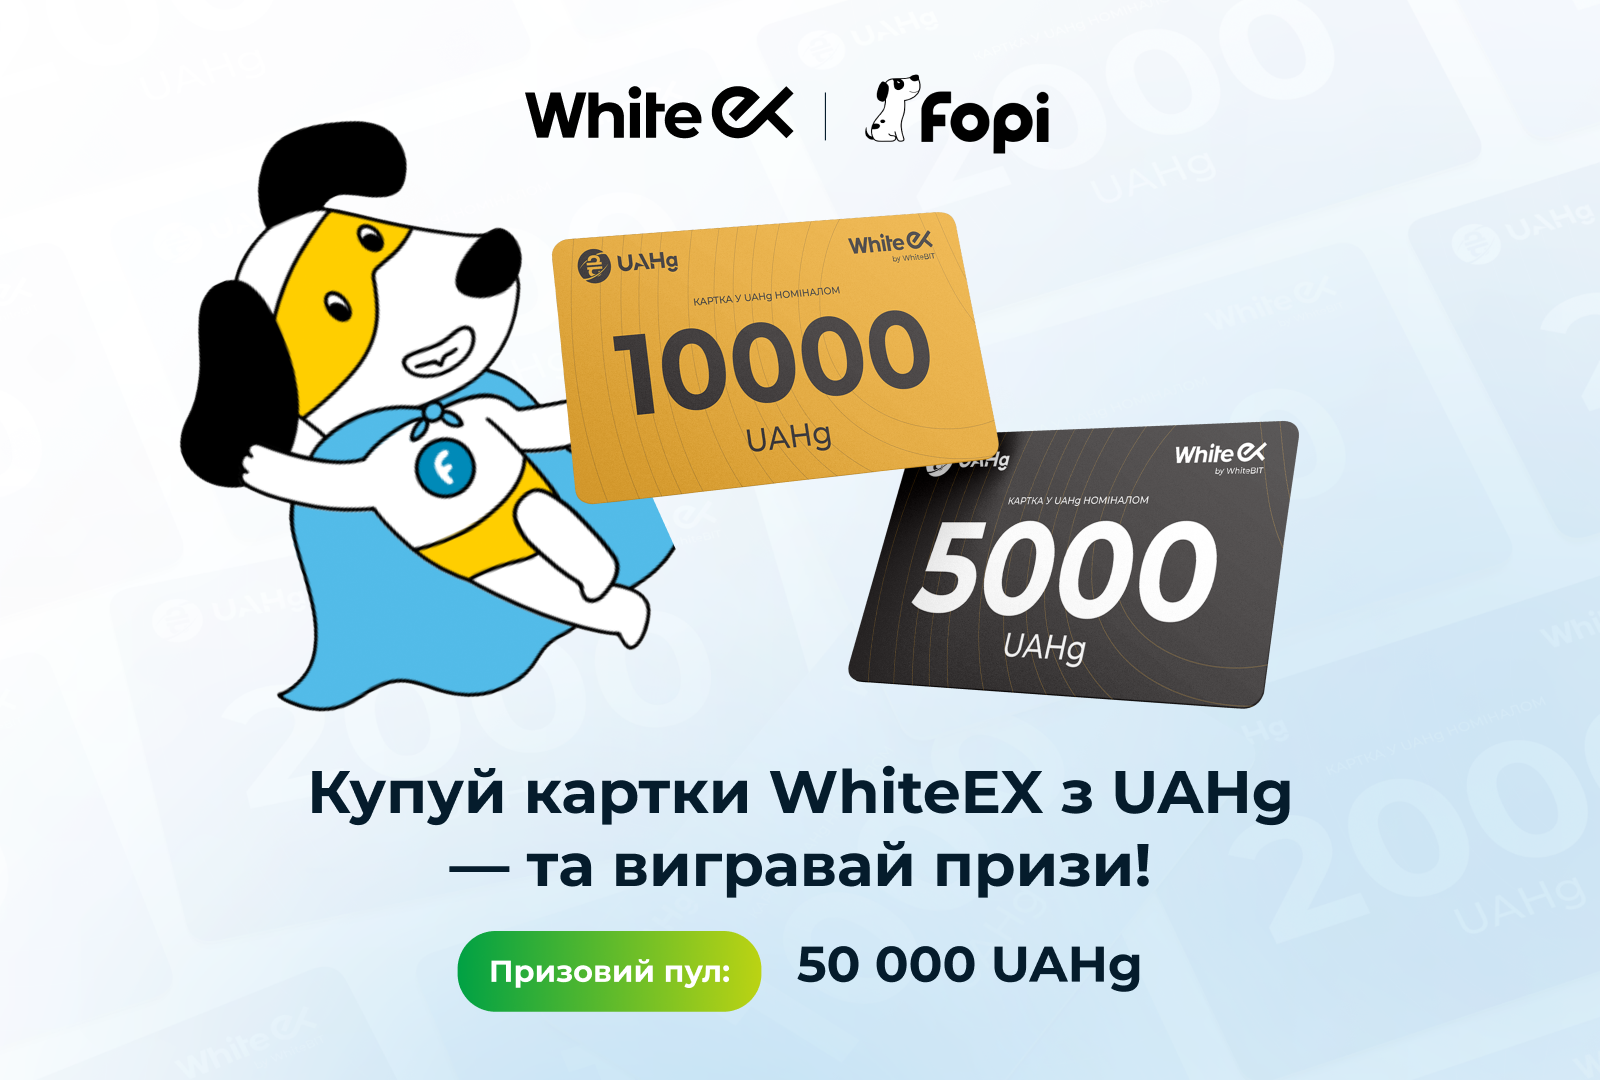 Купуй картки WhiteEX з UAHg - та вигравай призи!